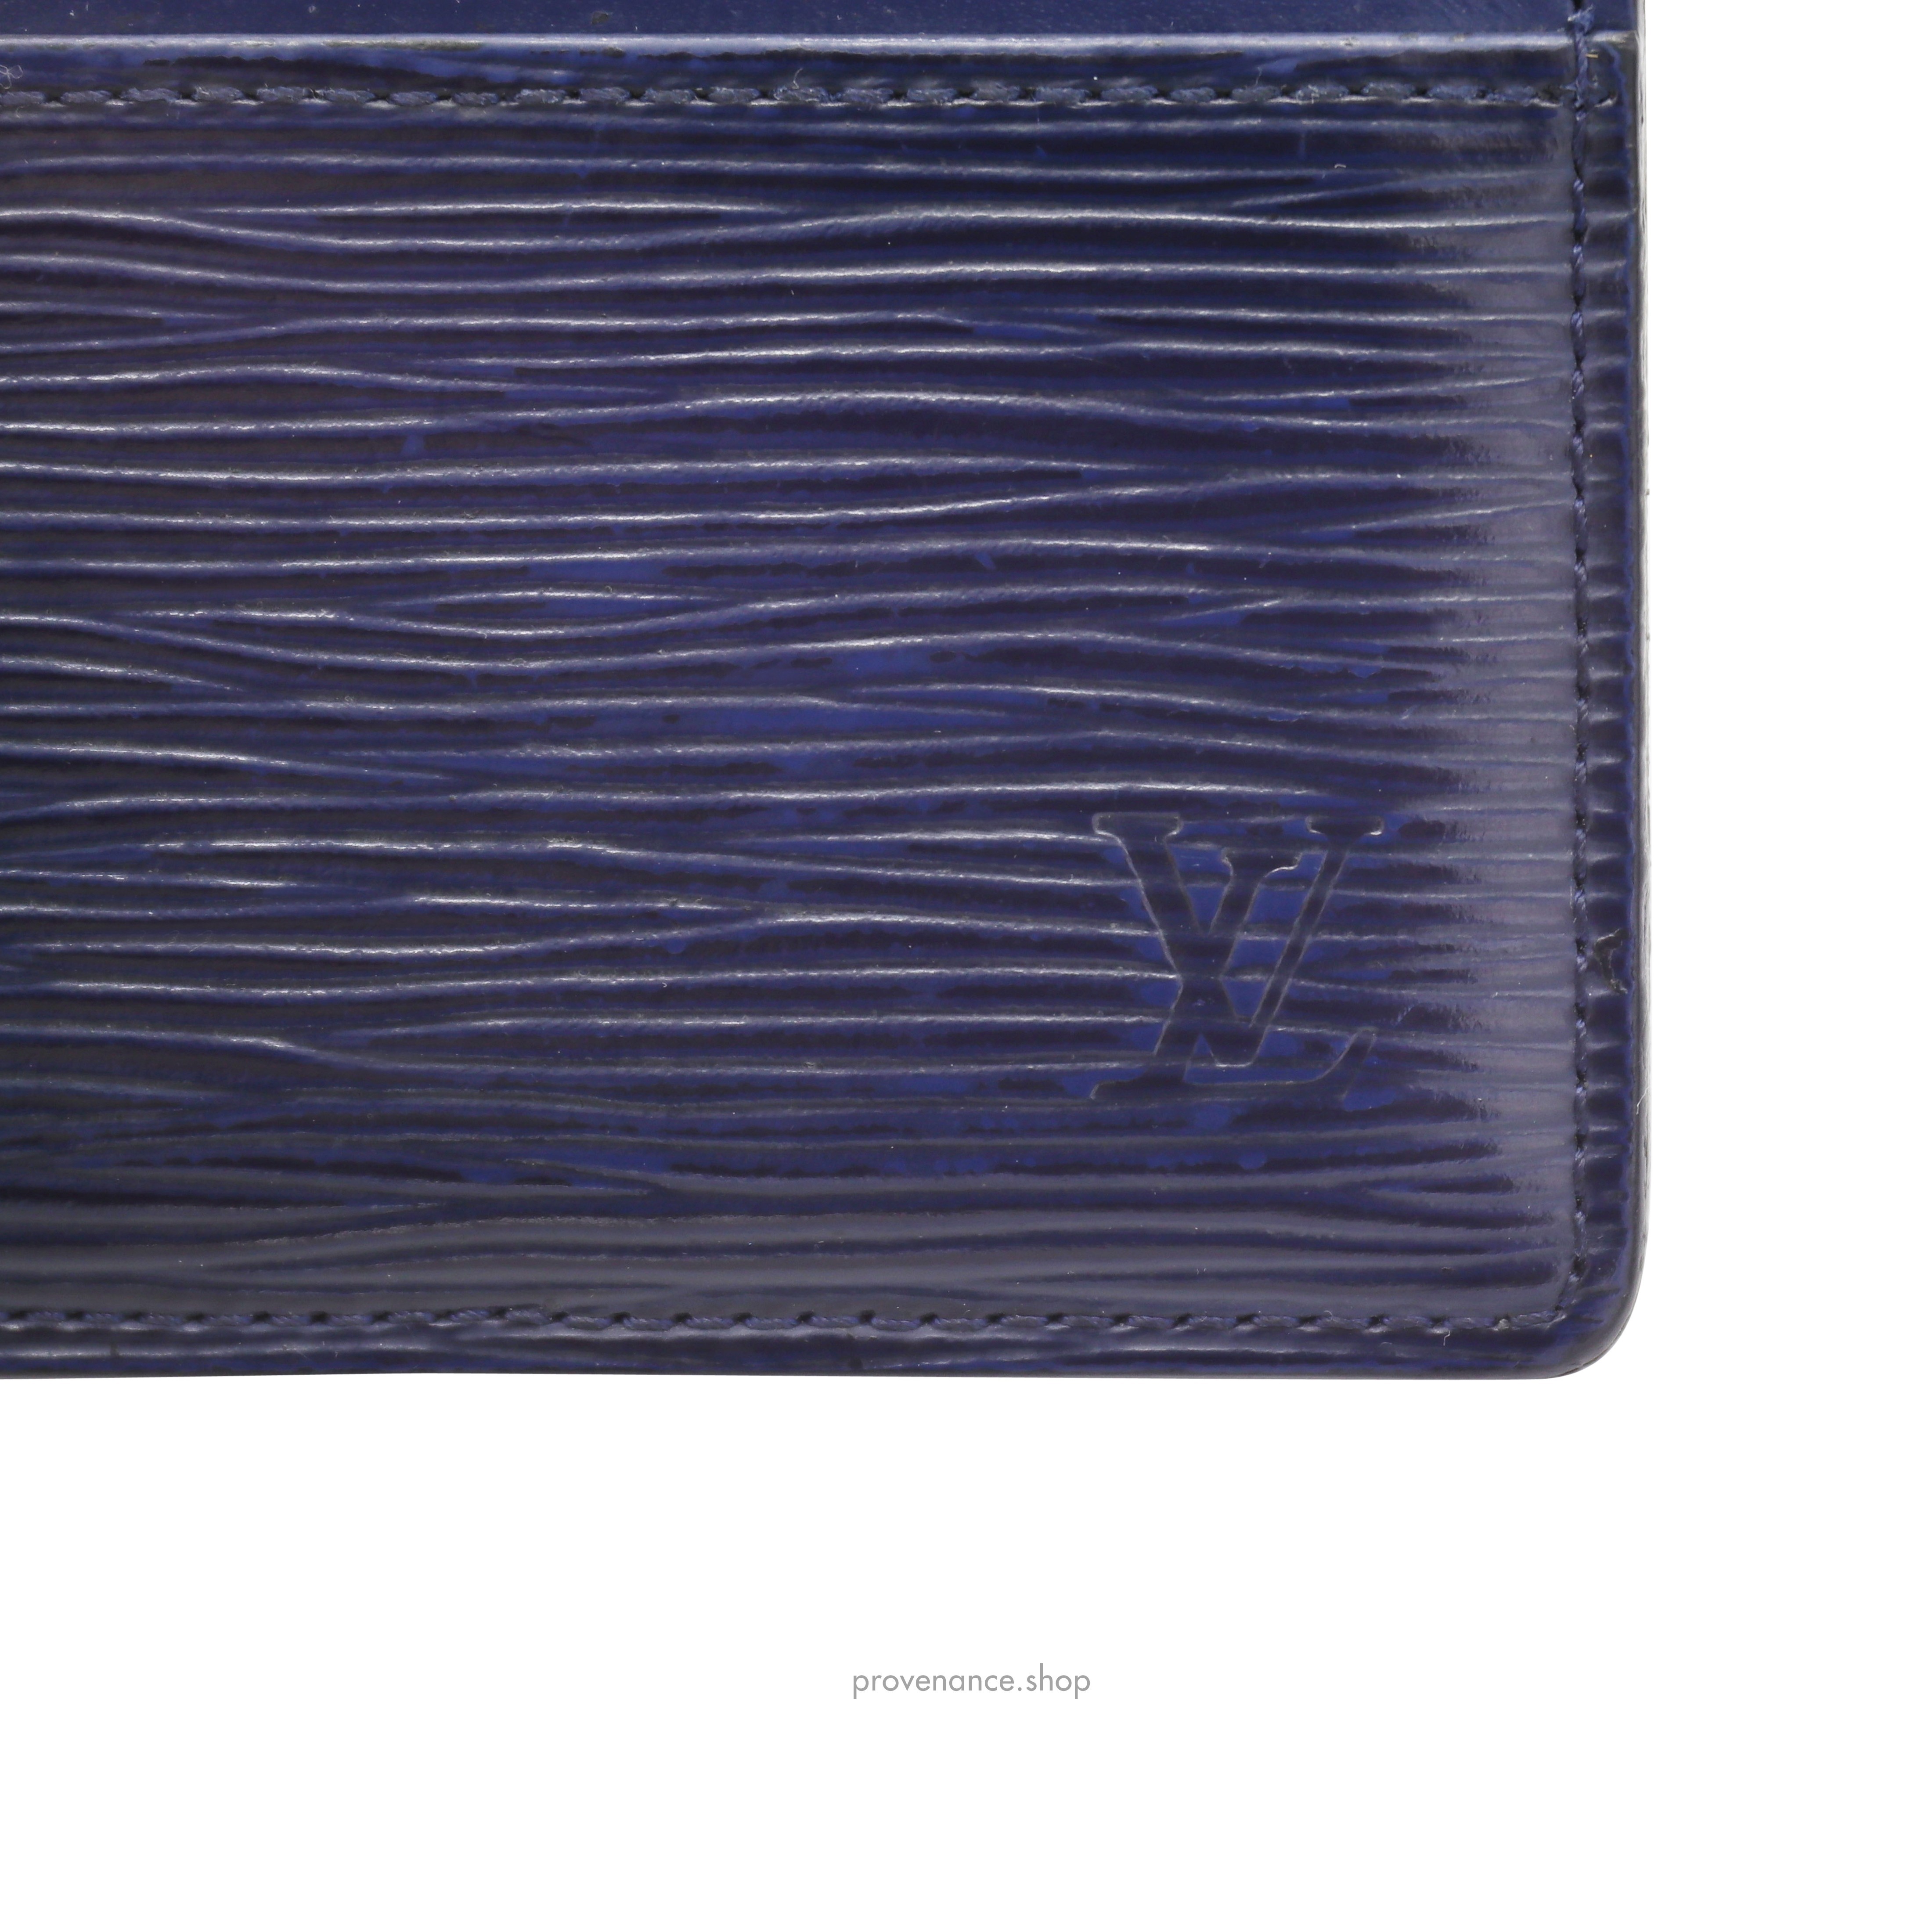 Card Holder Wallet - Navy Blue Epi Leather - 7